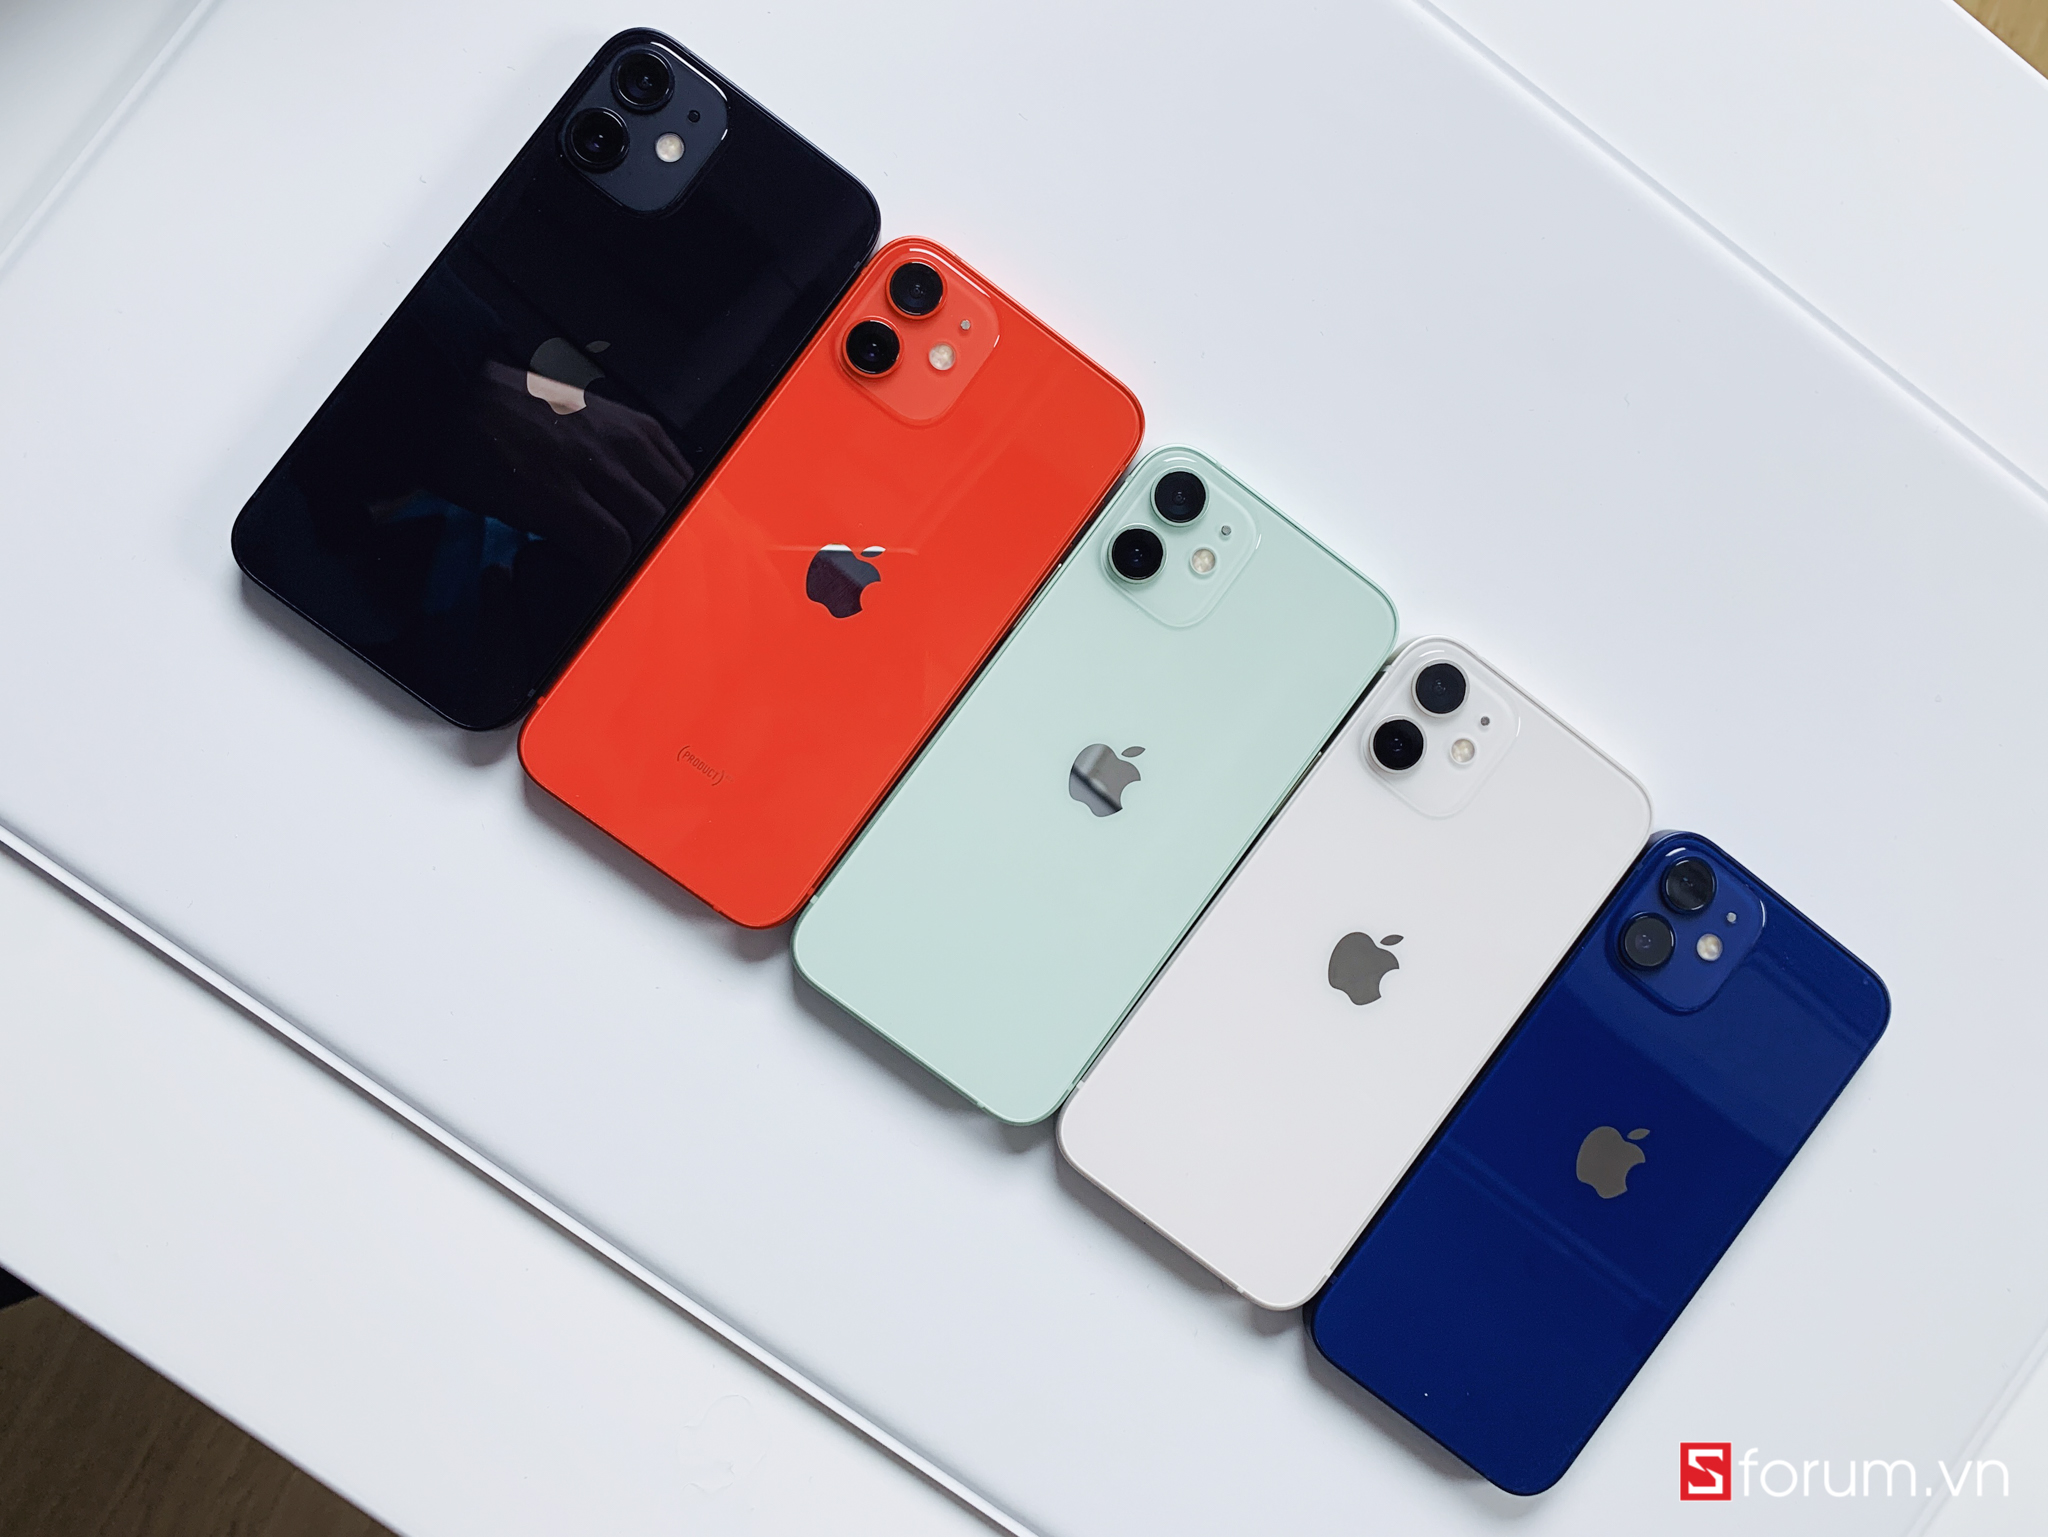 [Black Friday] iPhone 12 mini VN/A cấu hình cực mạnh, thiết kế ấn tượng, hỗ trợ 5G được giảm giá sốc tới 3 triệu đồng